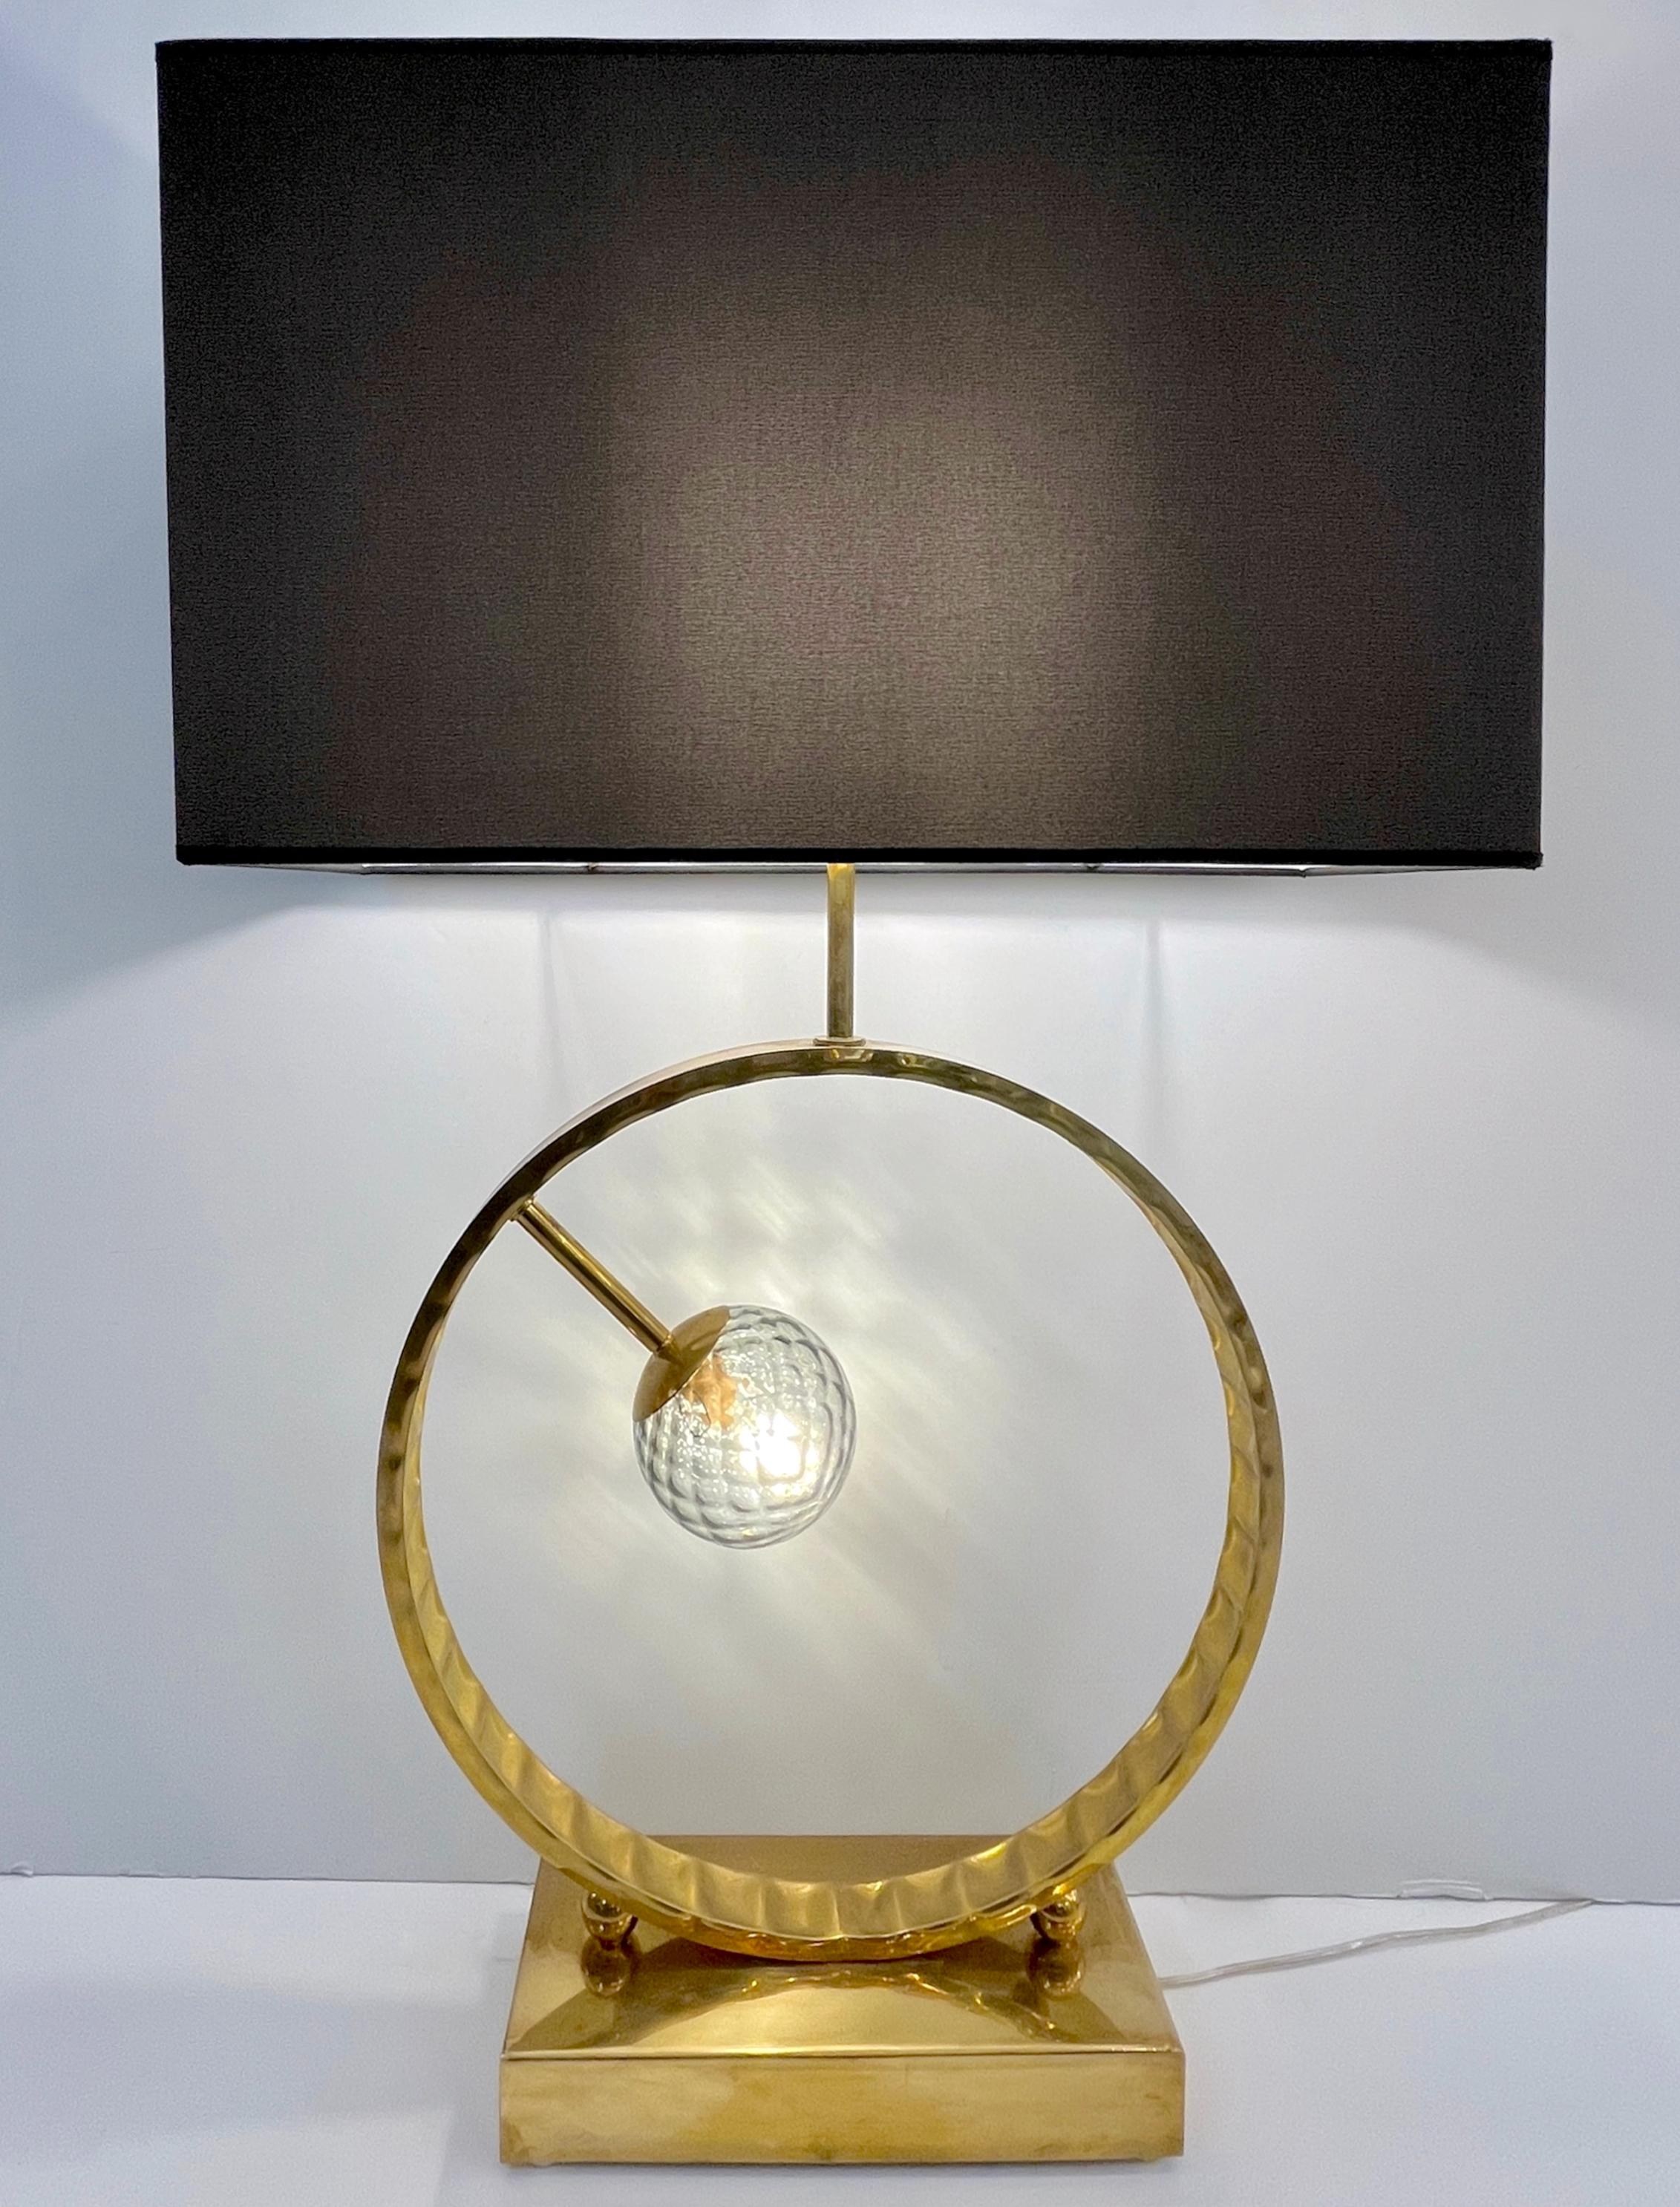 2 Erhältlich - Die Murano-Glaskugel kann in verschiedenen Farben gewählt werden, siehe Bild - Eine zeitgenössische, sehr dekorative, hohe Tischlampe von großer Größe, vollständig handgefertigt in Italien, mit einem verlockenden, minimalistischen,